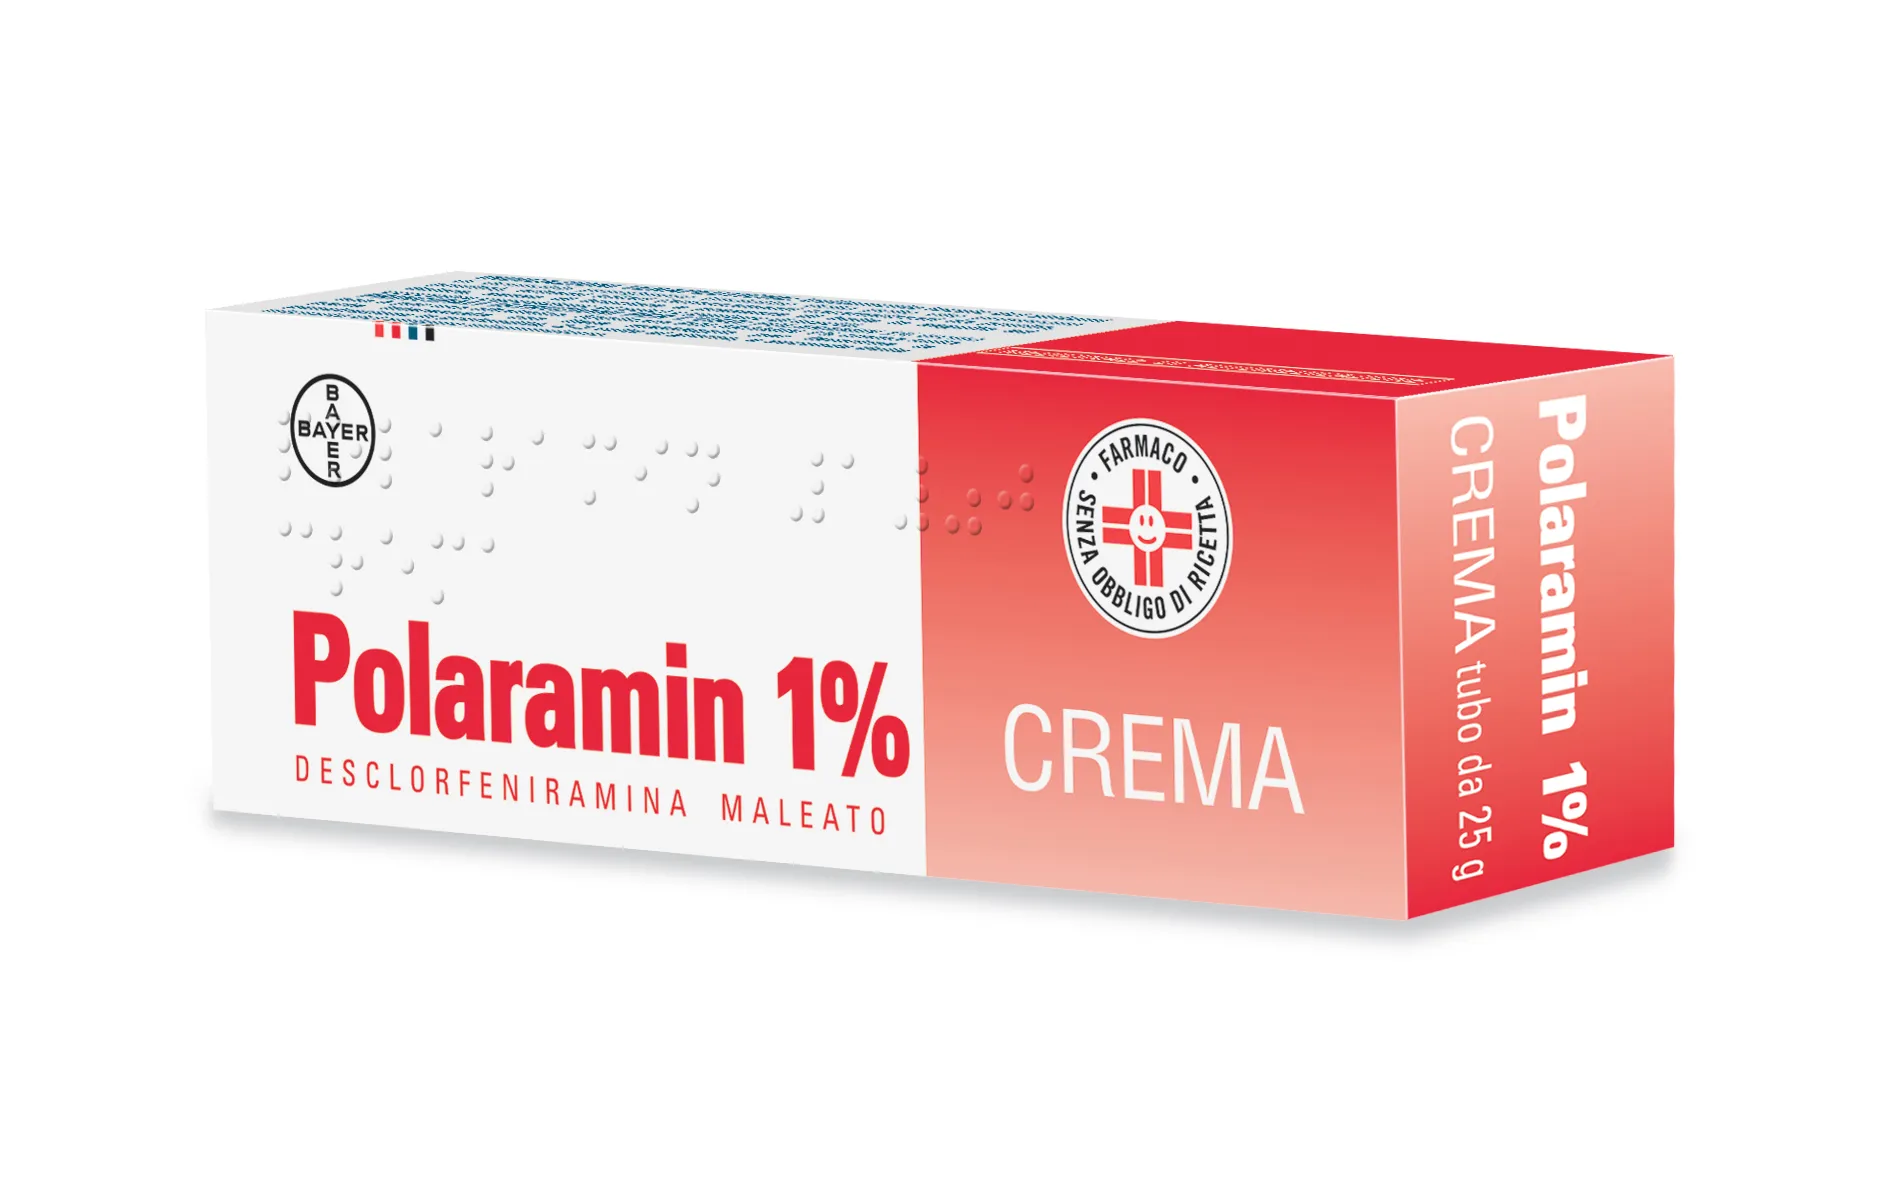 Polaramin Crema 25 g 1%